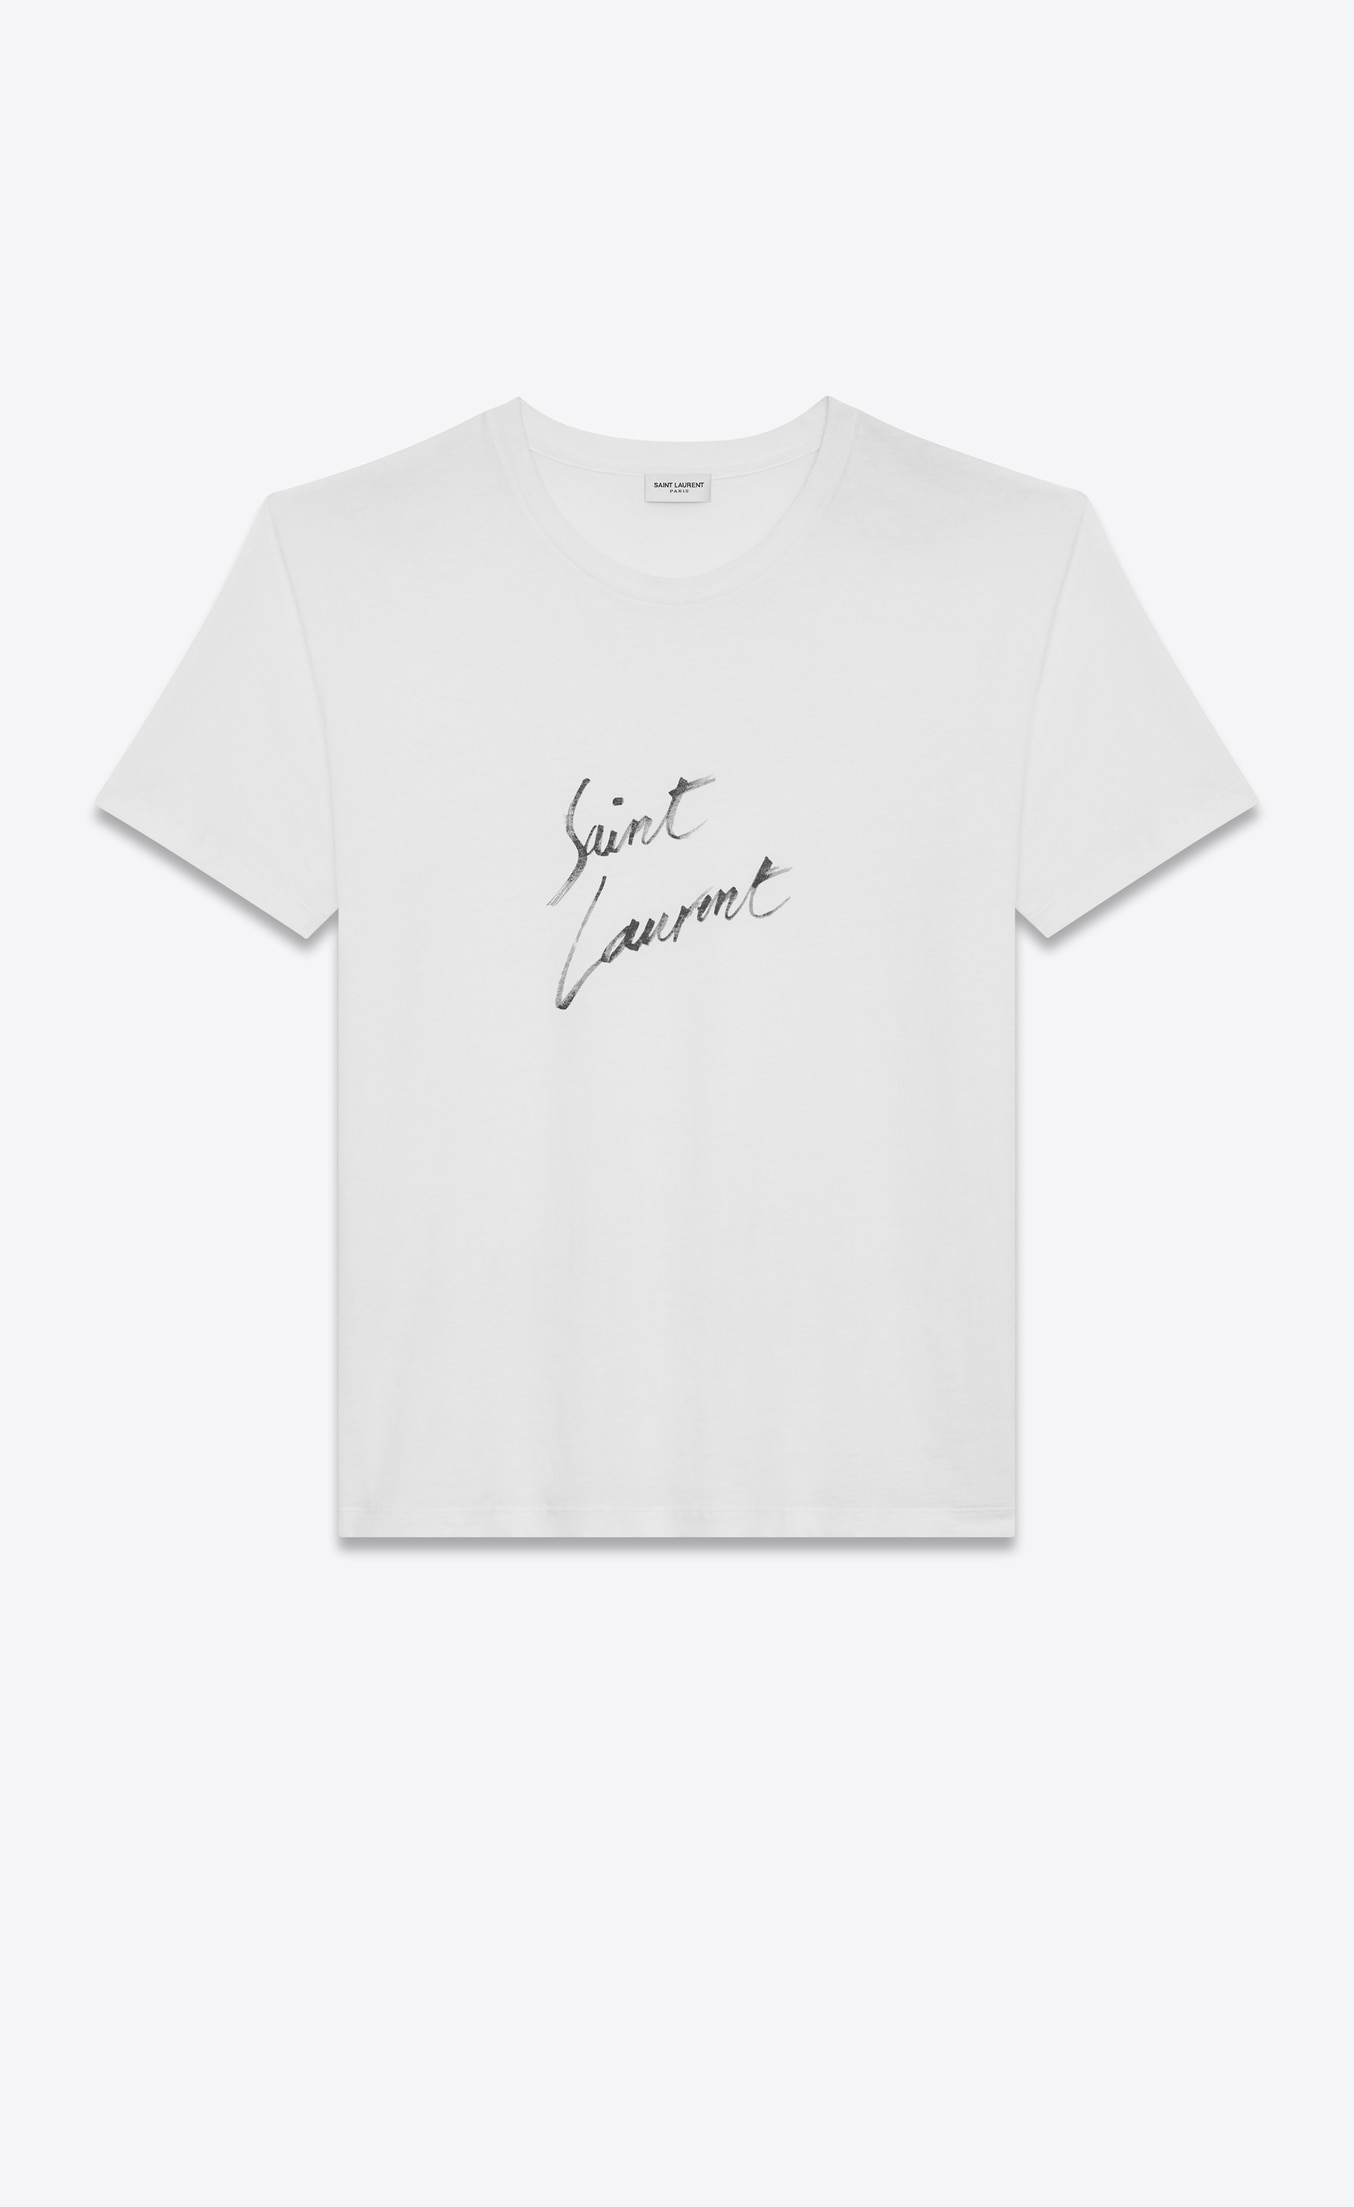 Saint Laurent Oversized SAINT LAURENT Signature T Shirt In Ivory And Black Cotton Jersey | YSL.com